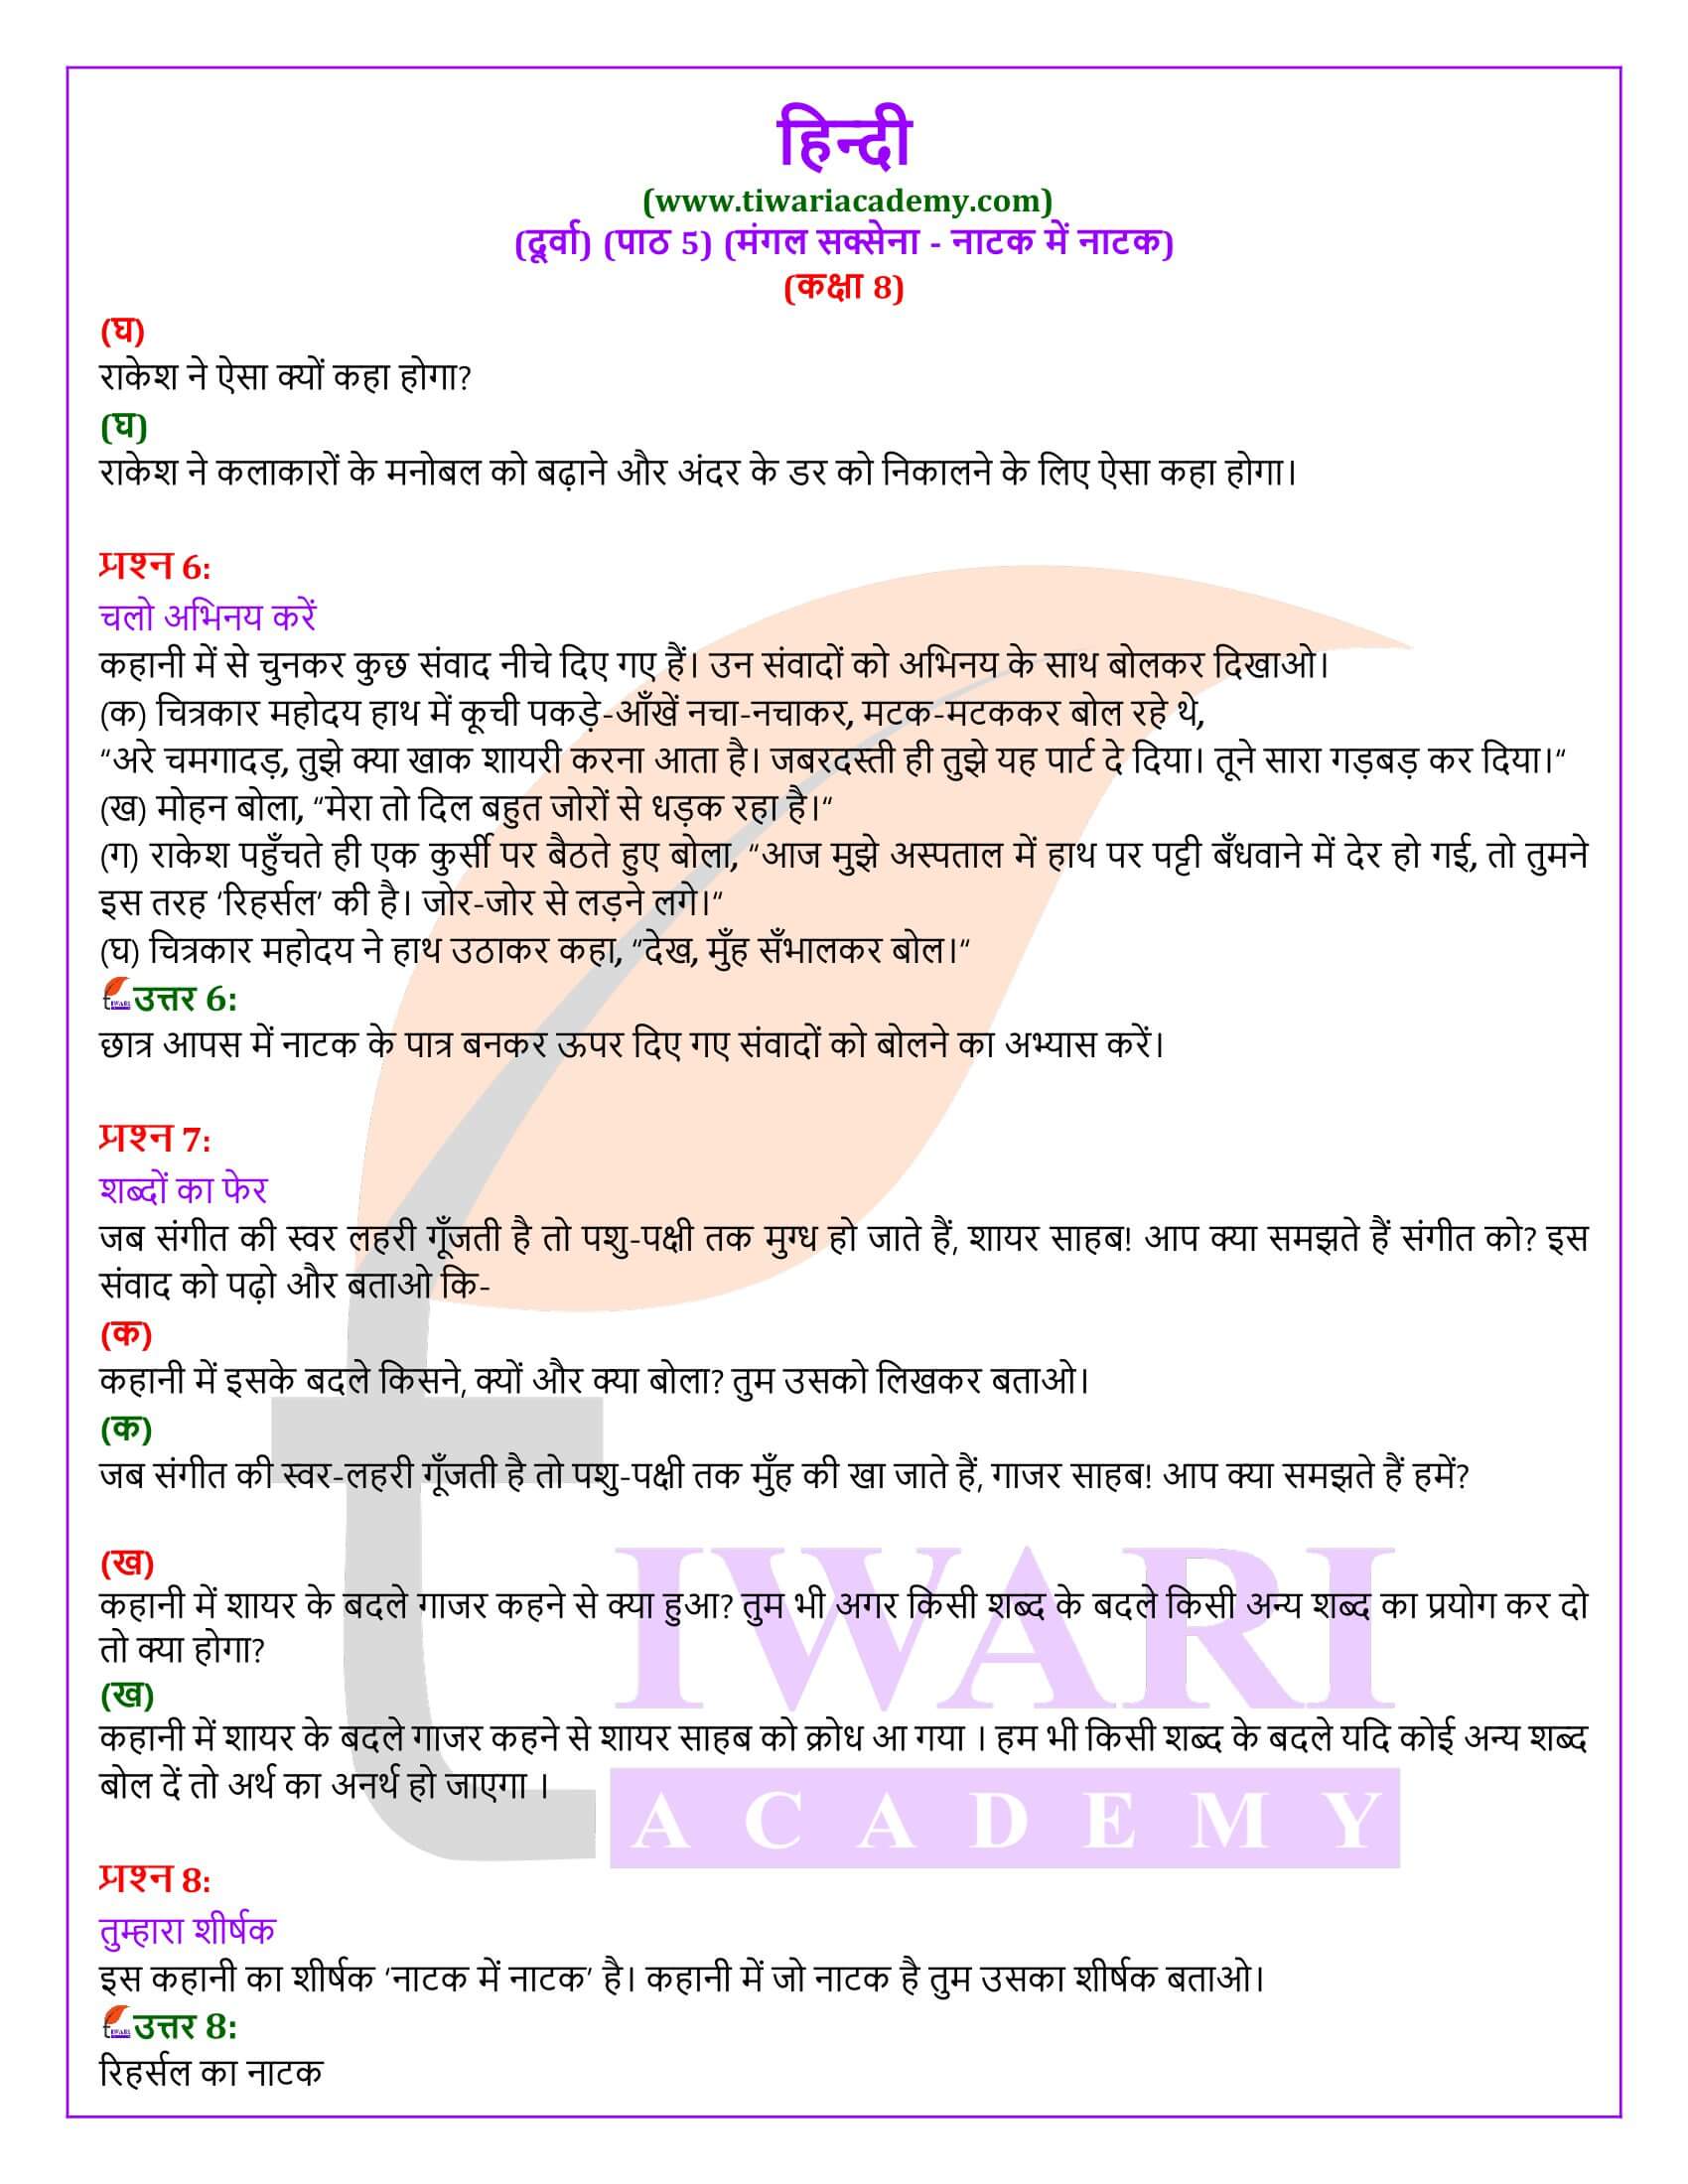 कक्षा 8 हिंदी दूर्वा अध्याय 5 के प्रश्न उत्तर